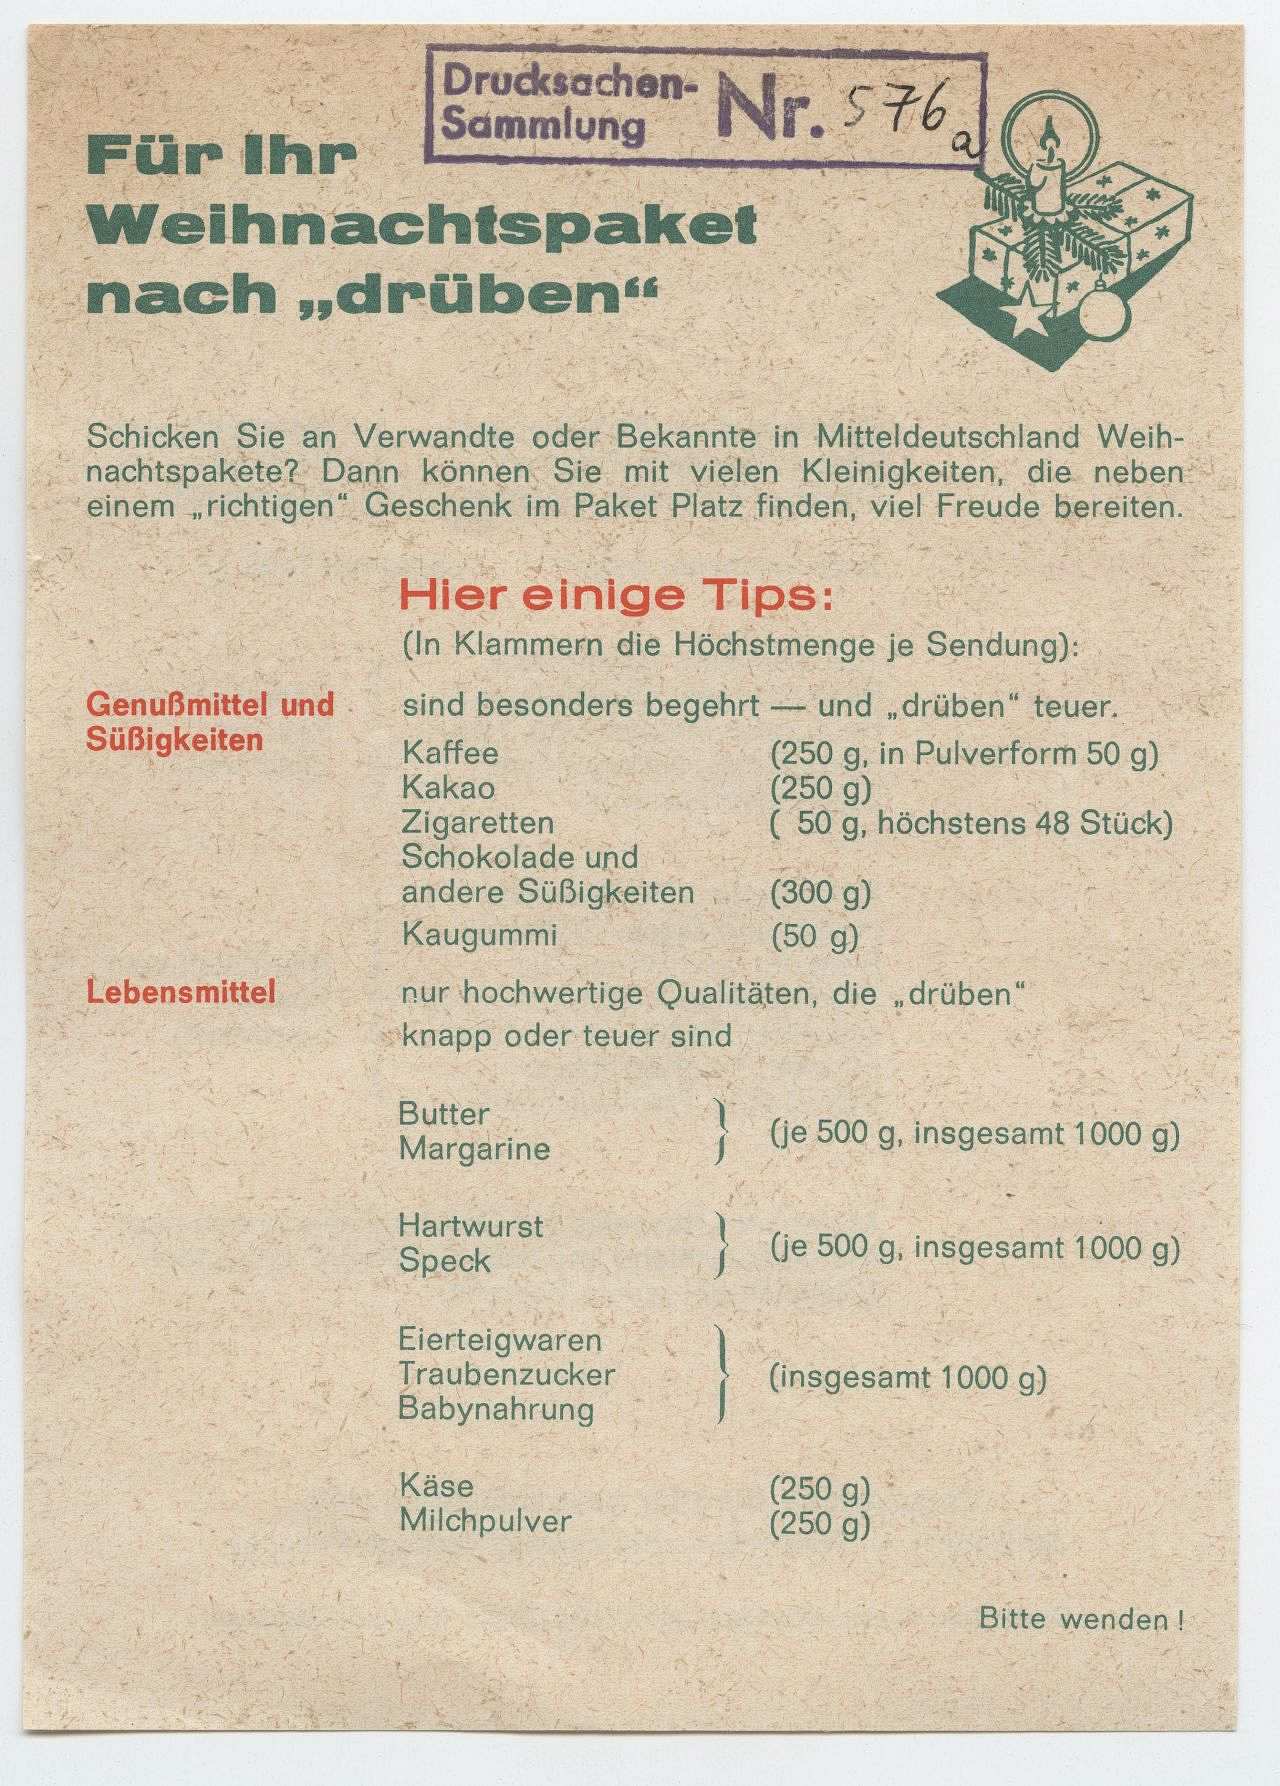 Beigefarbenes, doppelseitig bedrucktes Blatt, grün-rote Beschriftung. Rechts oben die Zeichnung eines Tannenzweiges mit Päckchen, Kerze und Kugel. Nachfolgend und auf der Rückseite Vorschläge und Geschenkideen für den Inhalt eines Weihnachtspaketes in die DDR.